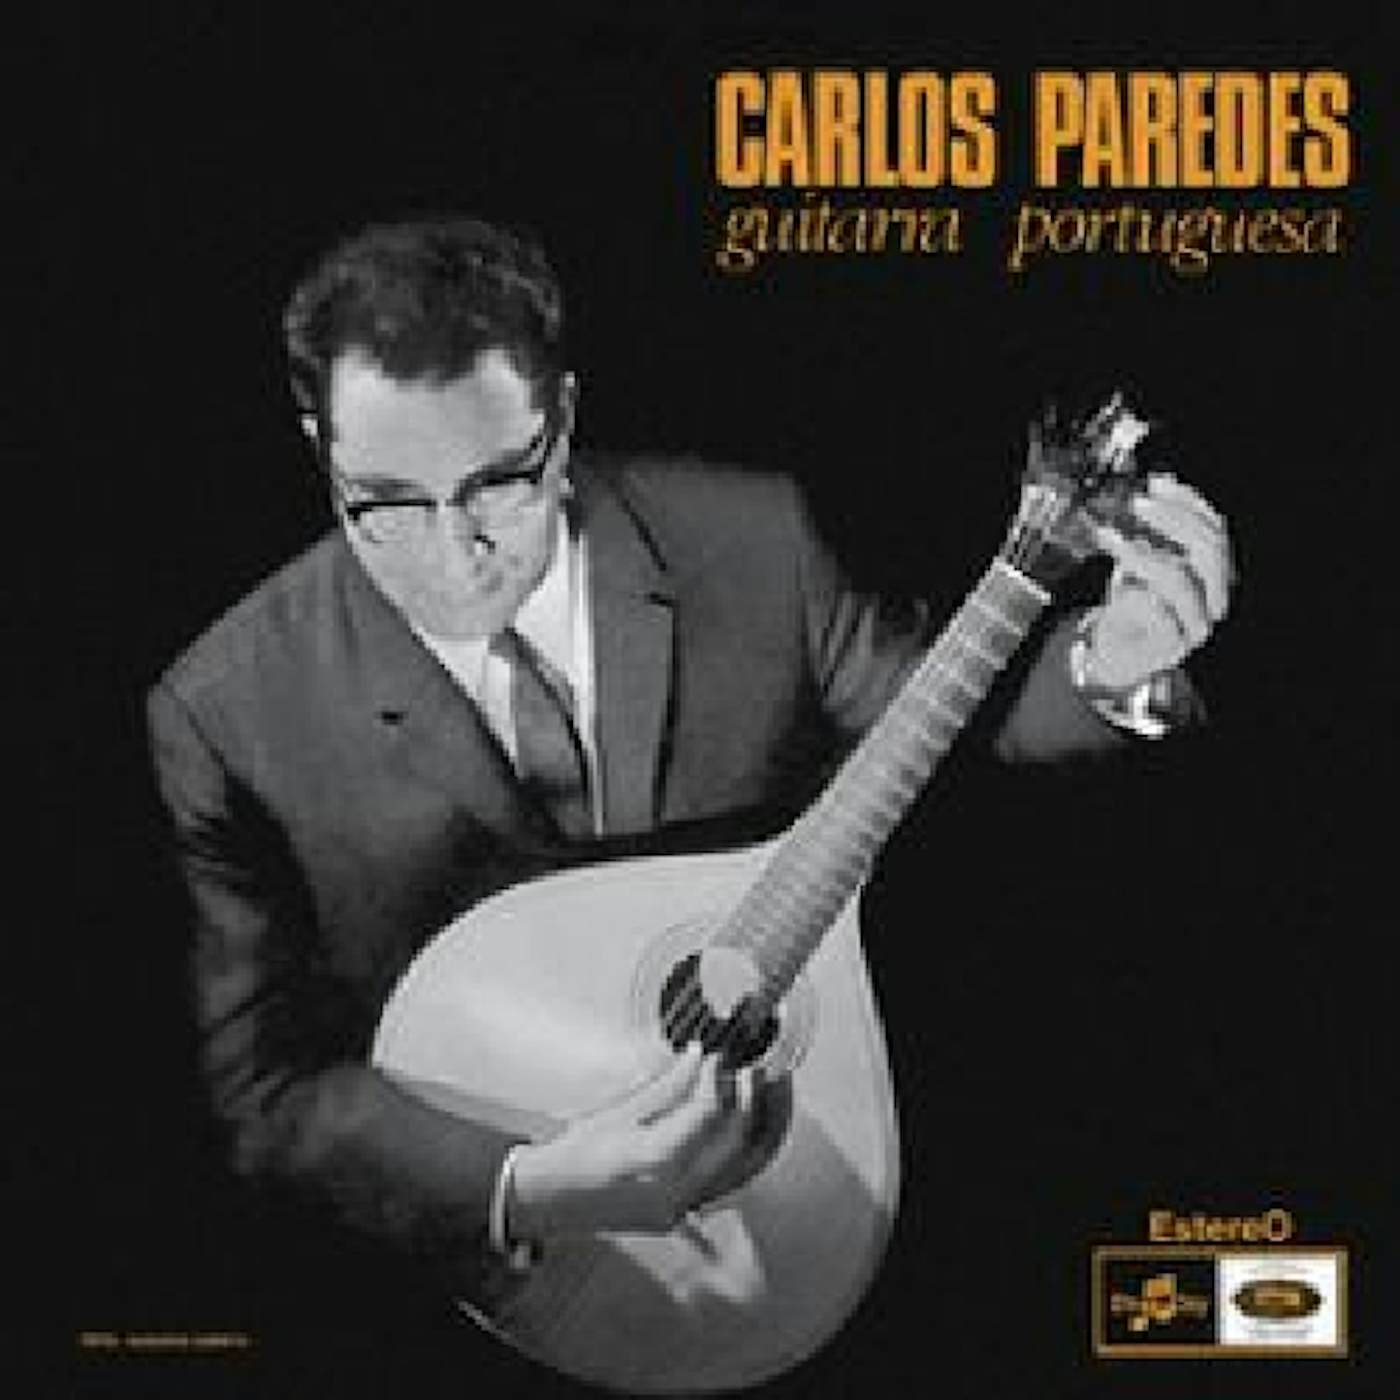 Carlos Paredes Guitarra Portuguesa Vinyl Record